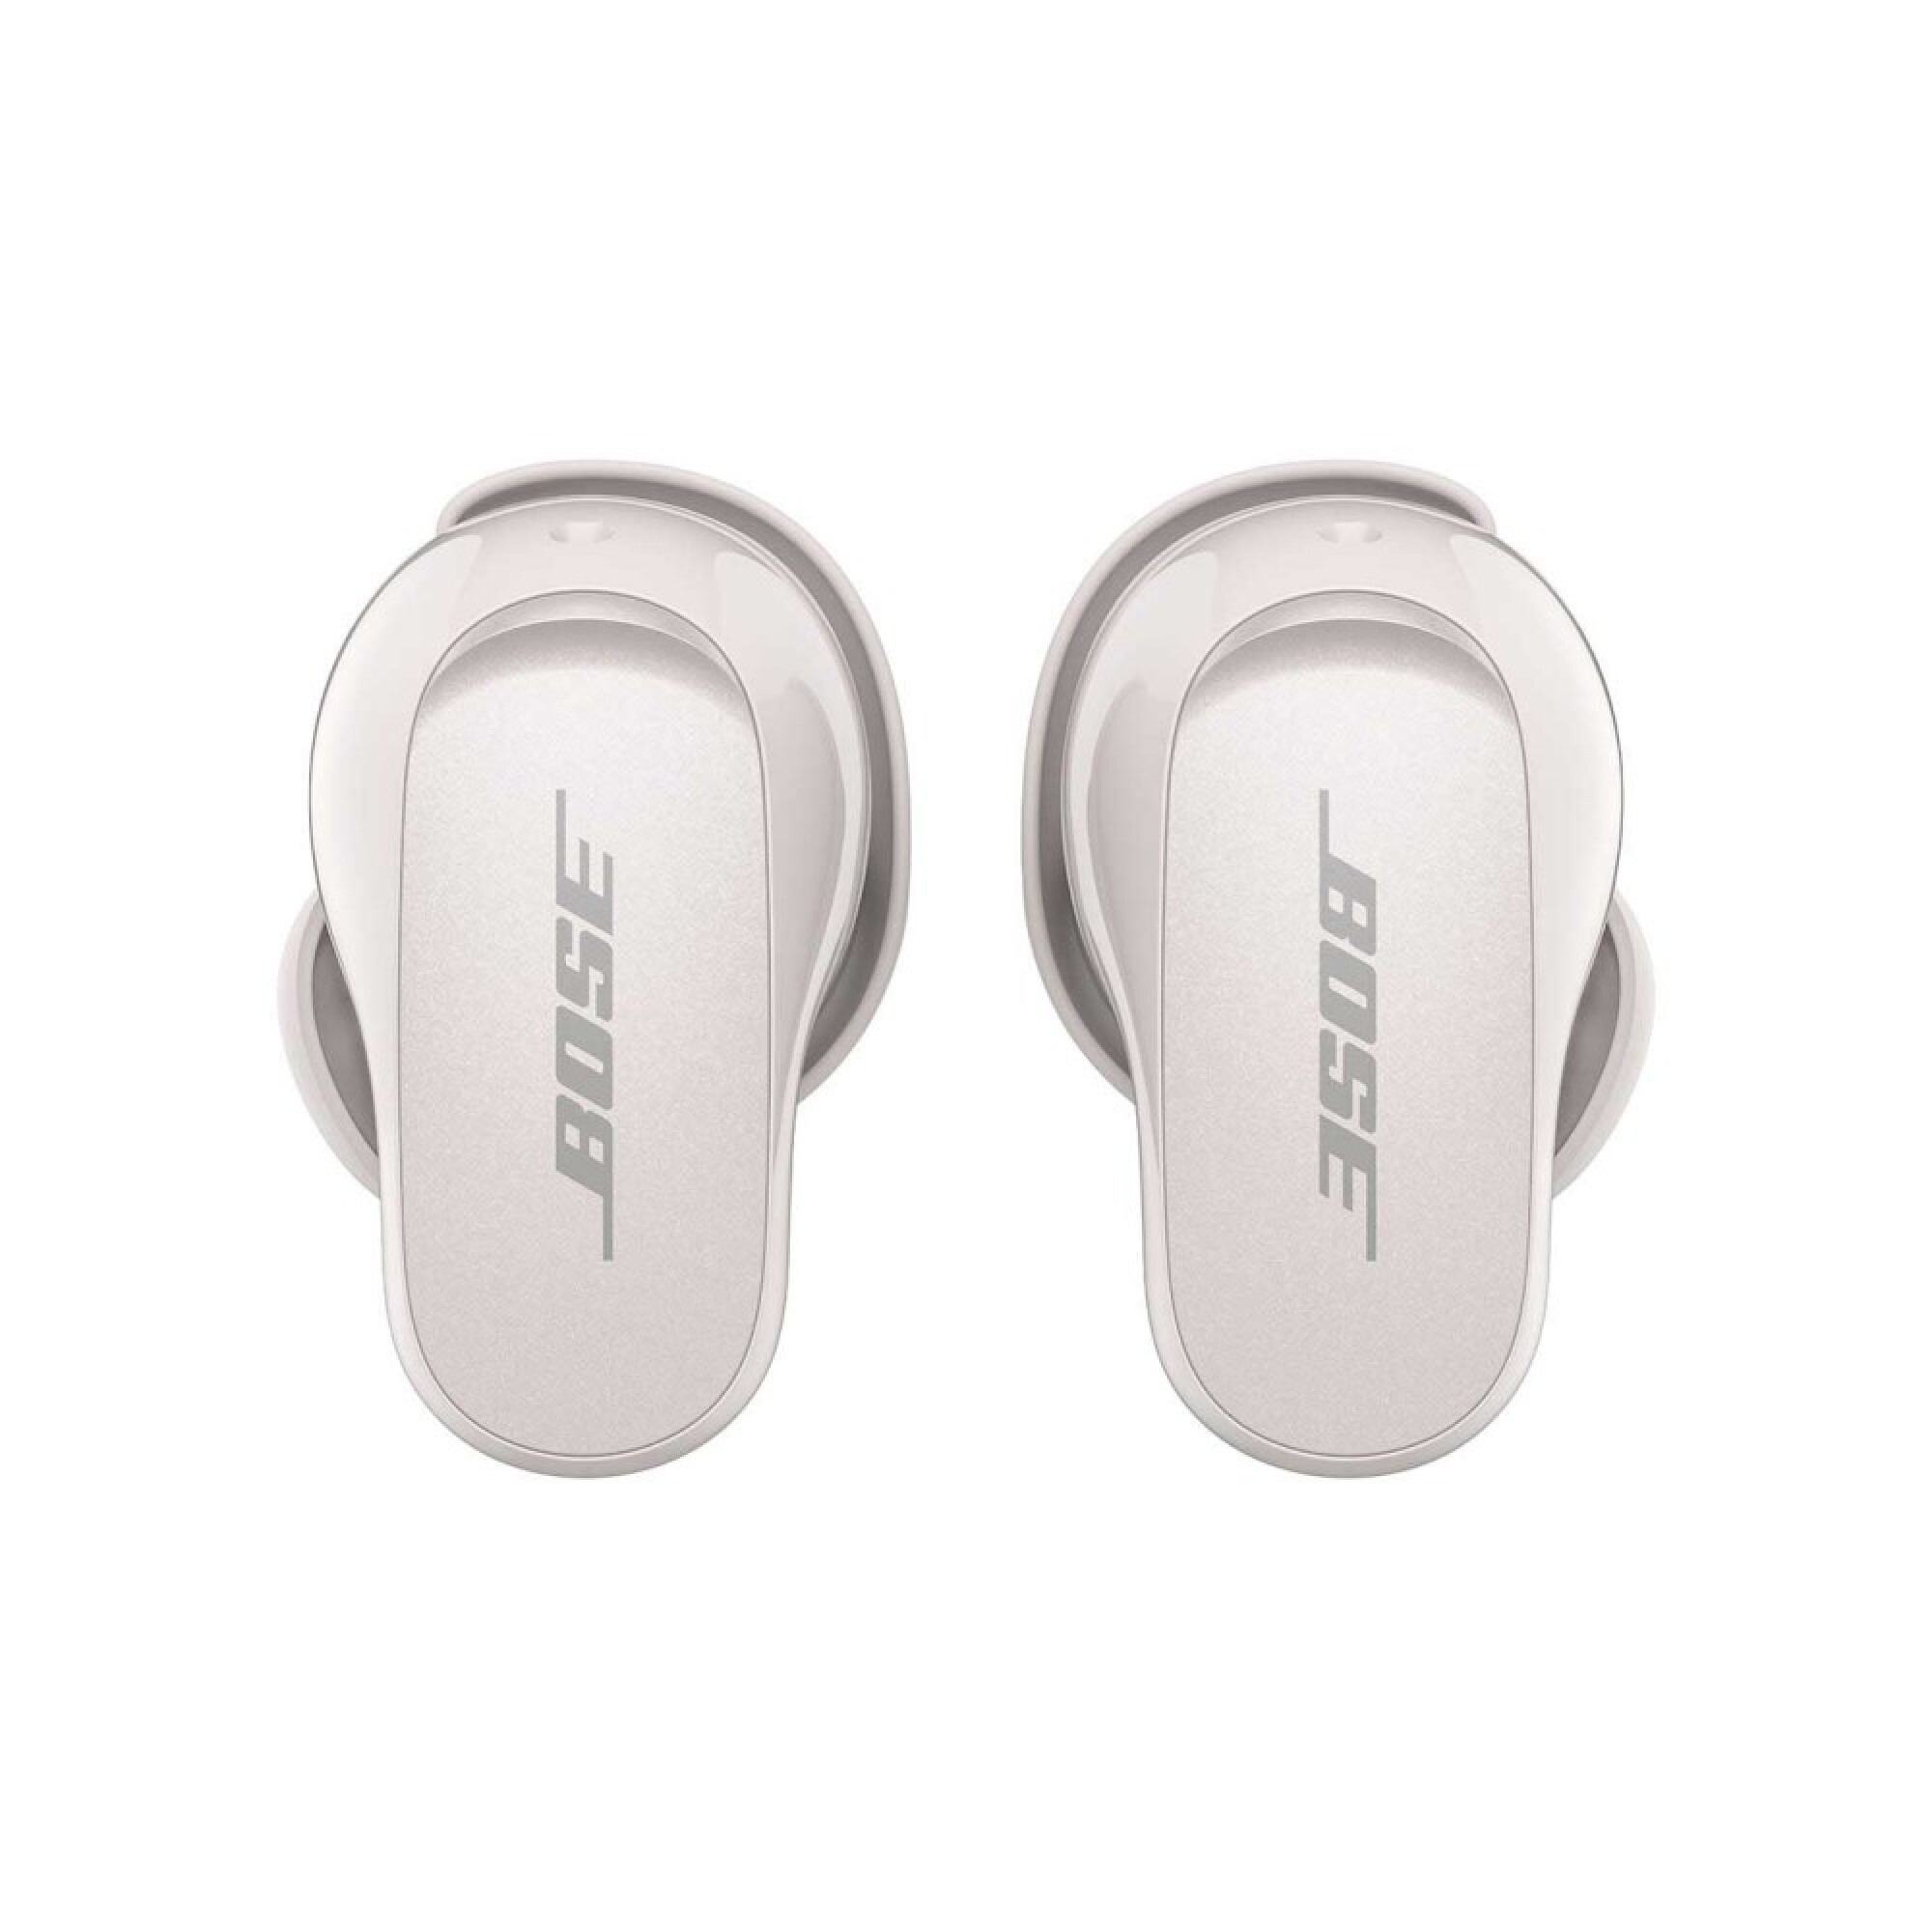  Bose QuietComfort - Auriculares inalámbricos con